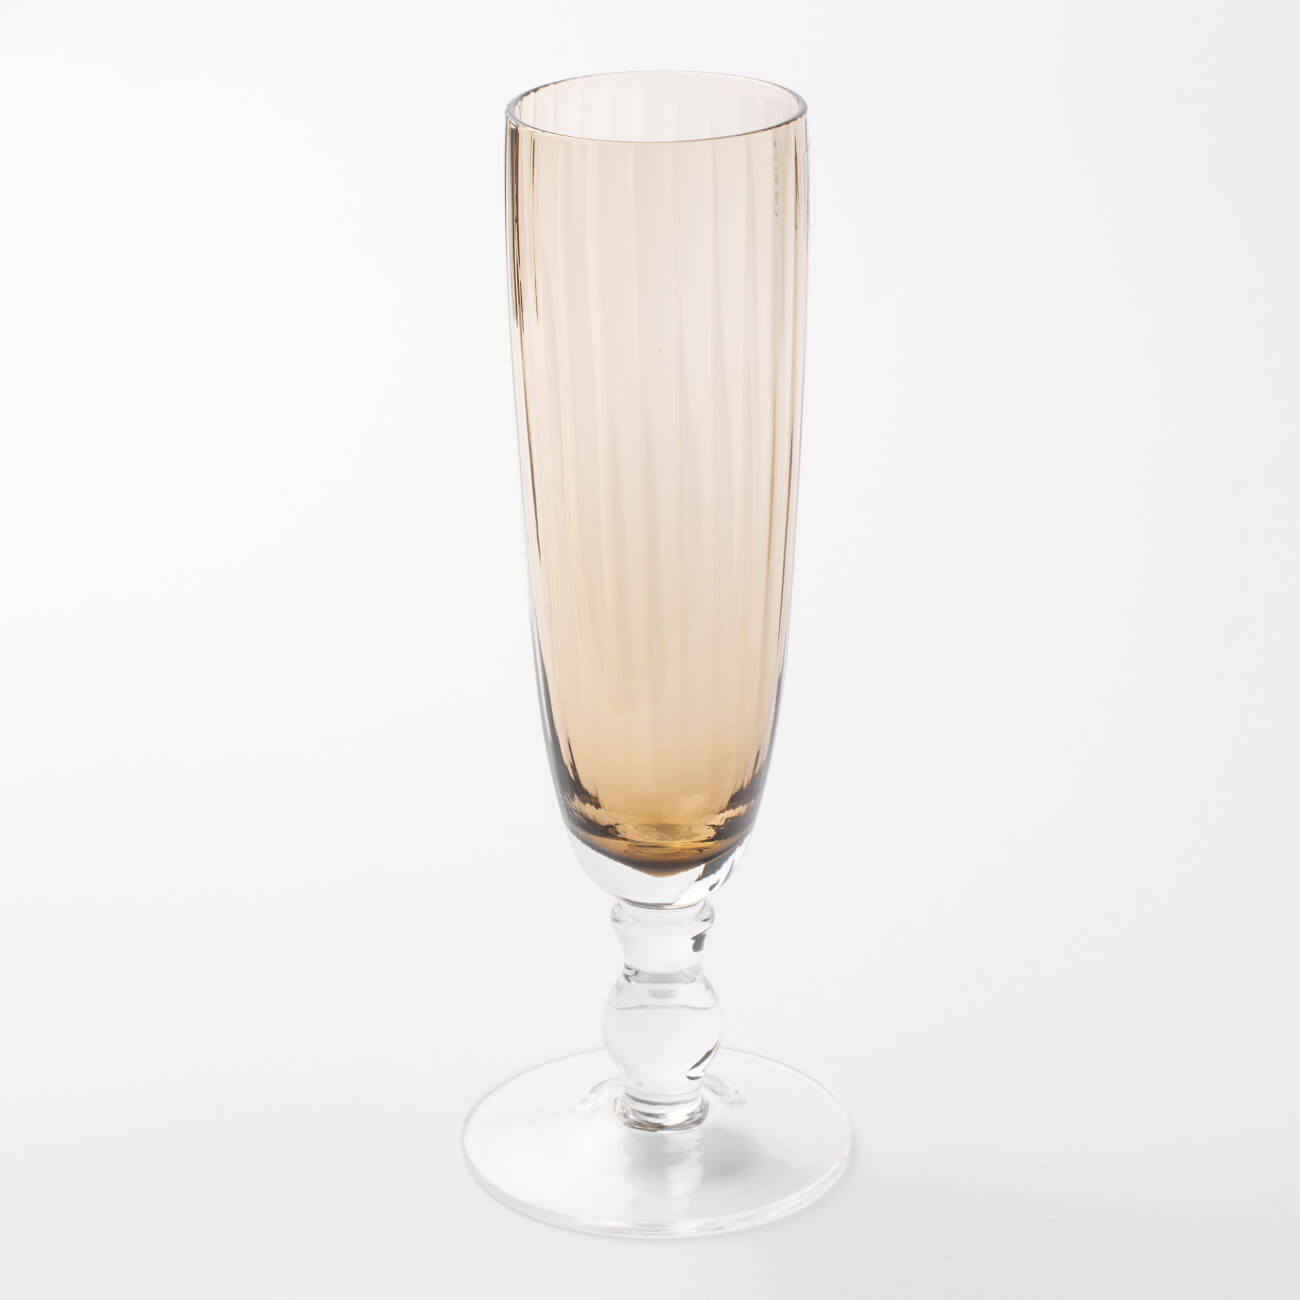 Бокал-кубок для шампанского, 210 мл, стекло, янтарный, Caserta кубок спортивный 134b золото